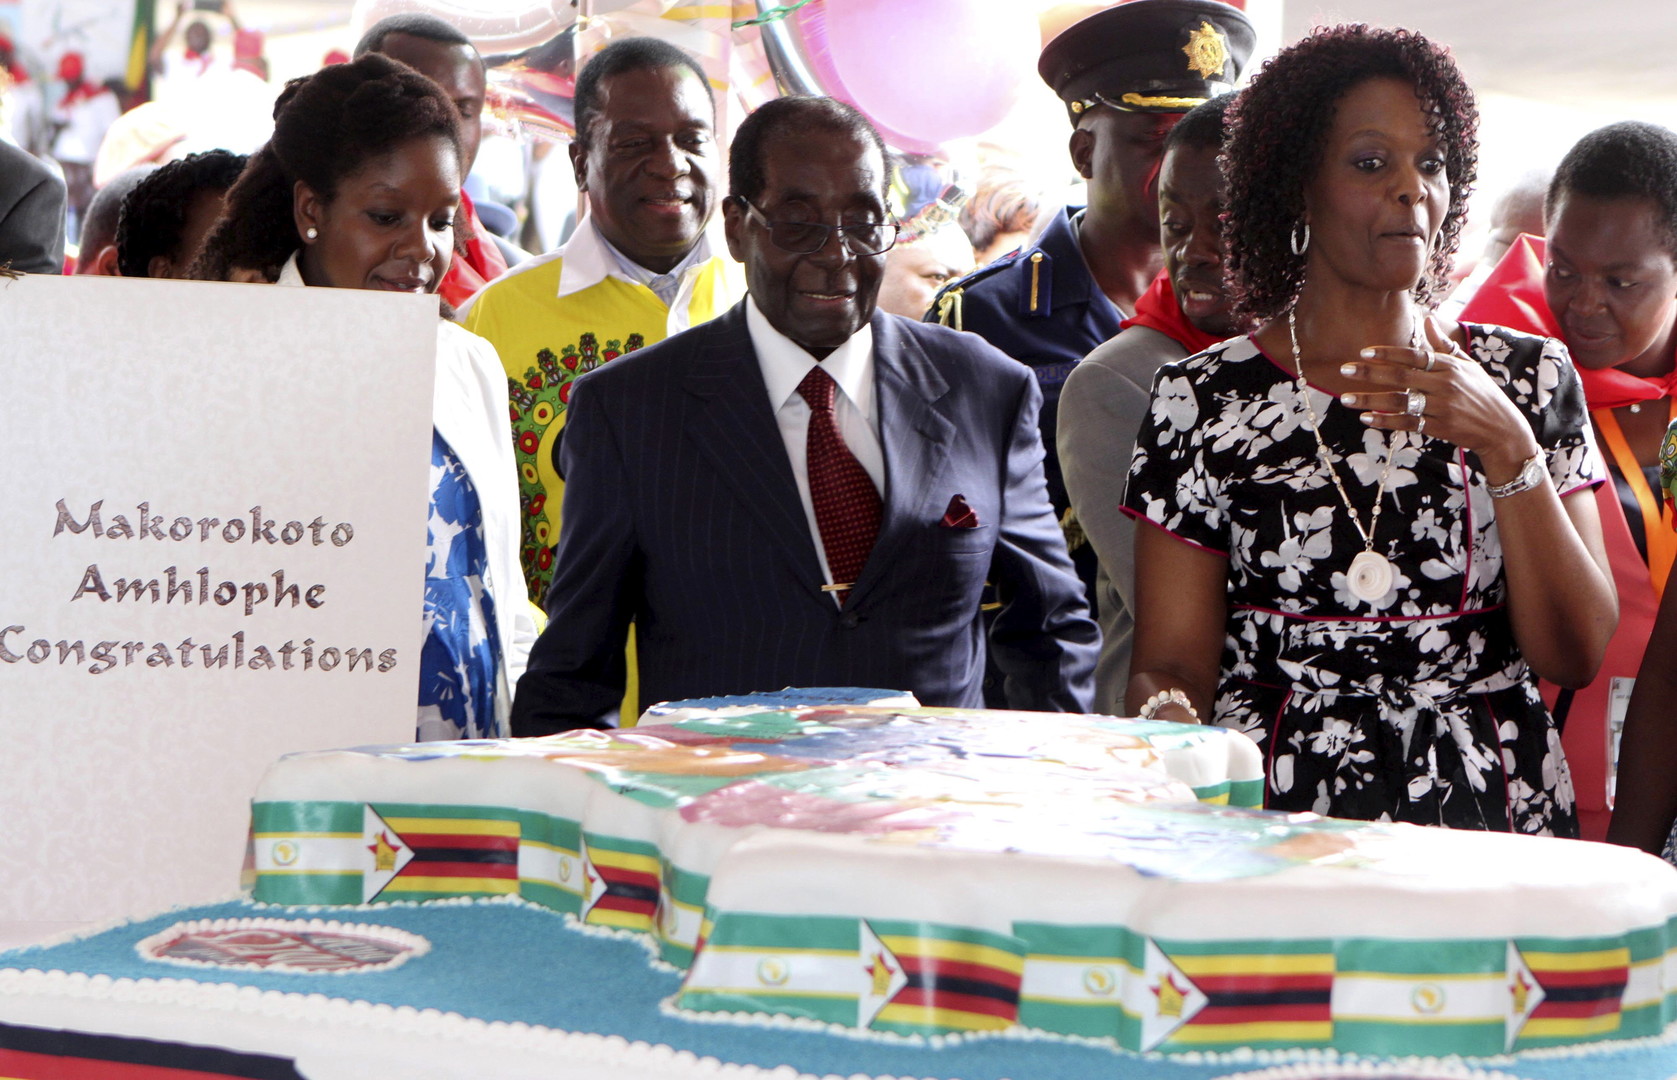 Zimbabwe : 50 000 convives pour le 92e anniversaire de Mugabe célébré en pleine sécheresse